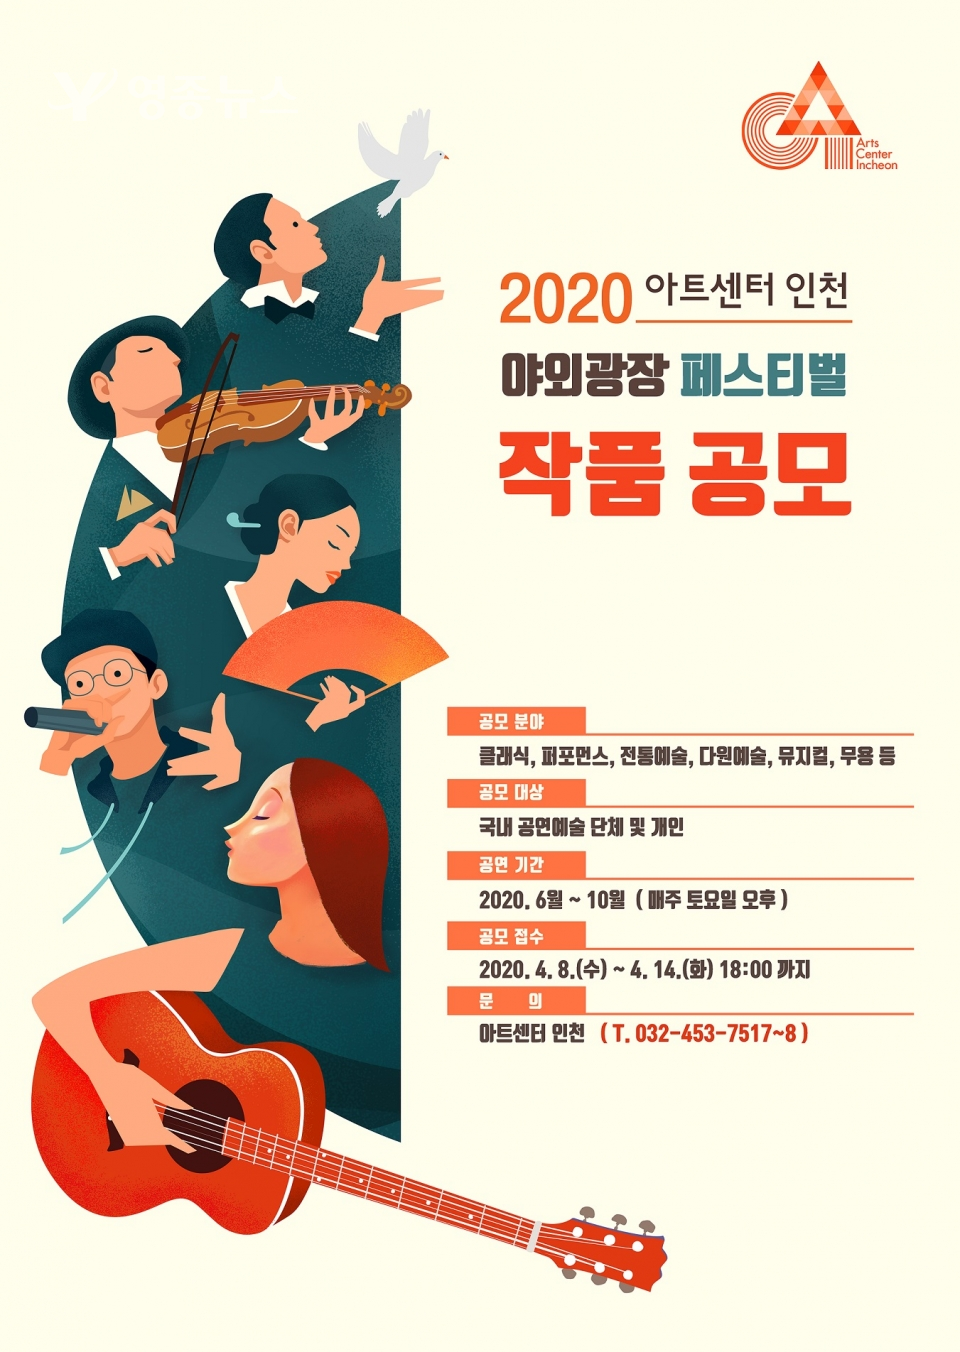 “아트센터 인천, 다양한 무료공연으로 시민들에게 한 발 더 다가선다”